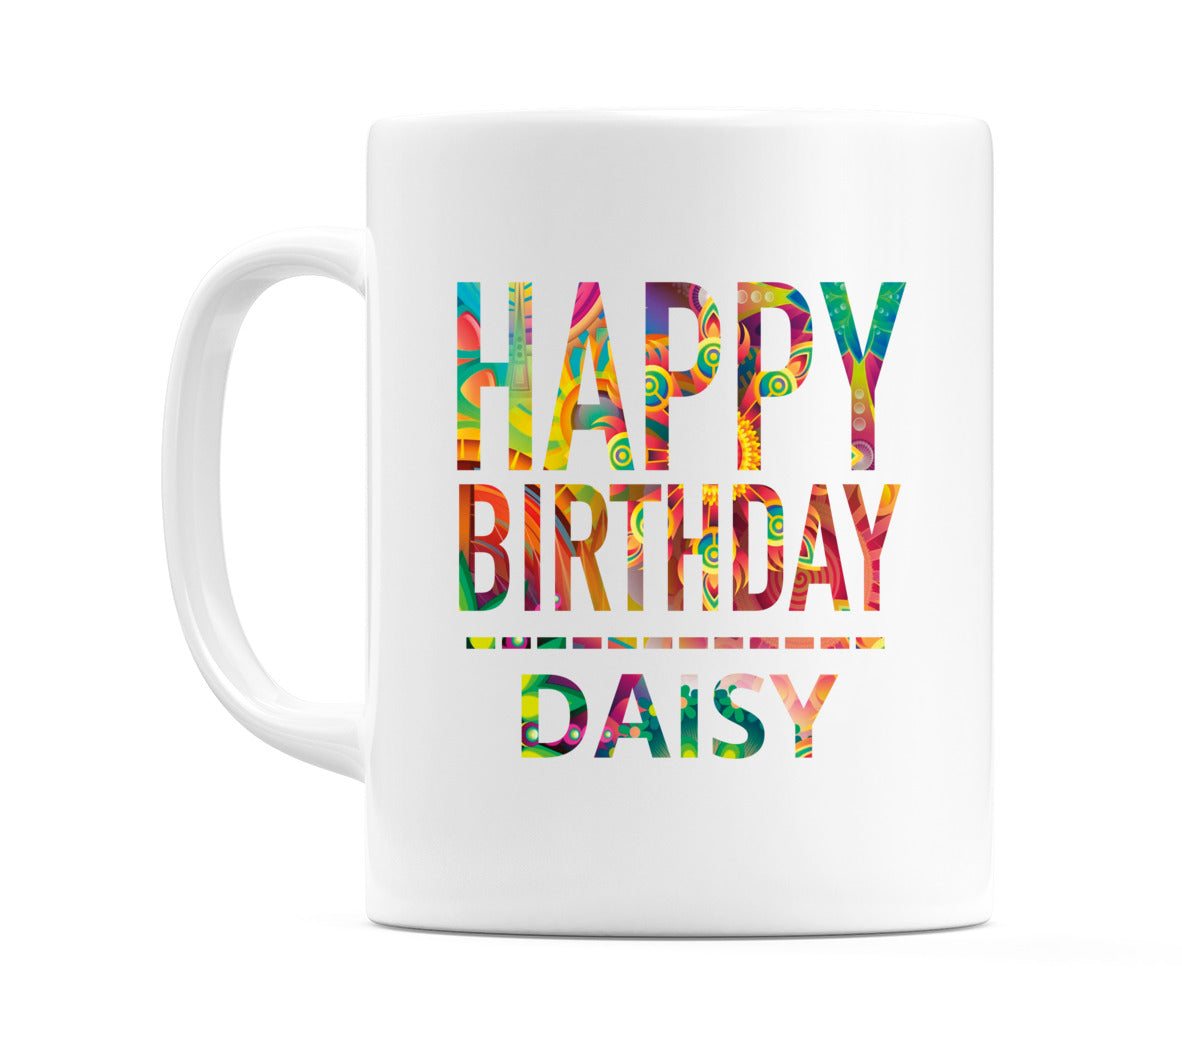 Happy Birthday Daisy (Tie Dye Effect) Mug Cup by WeDoMugs